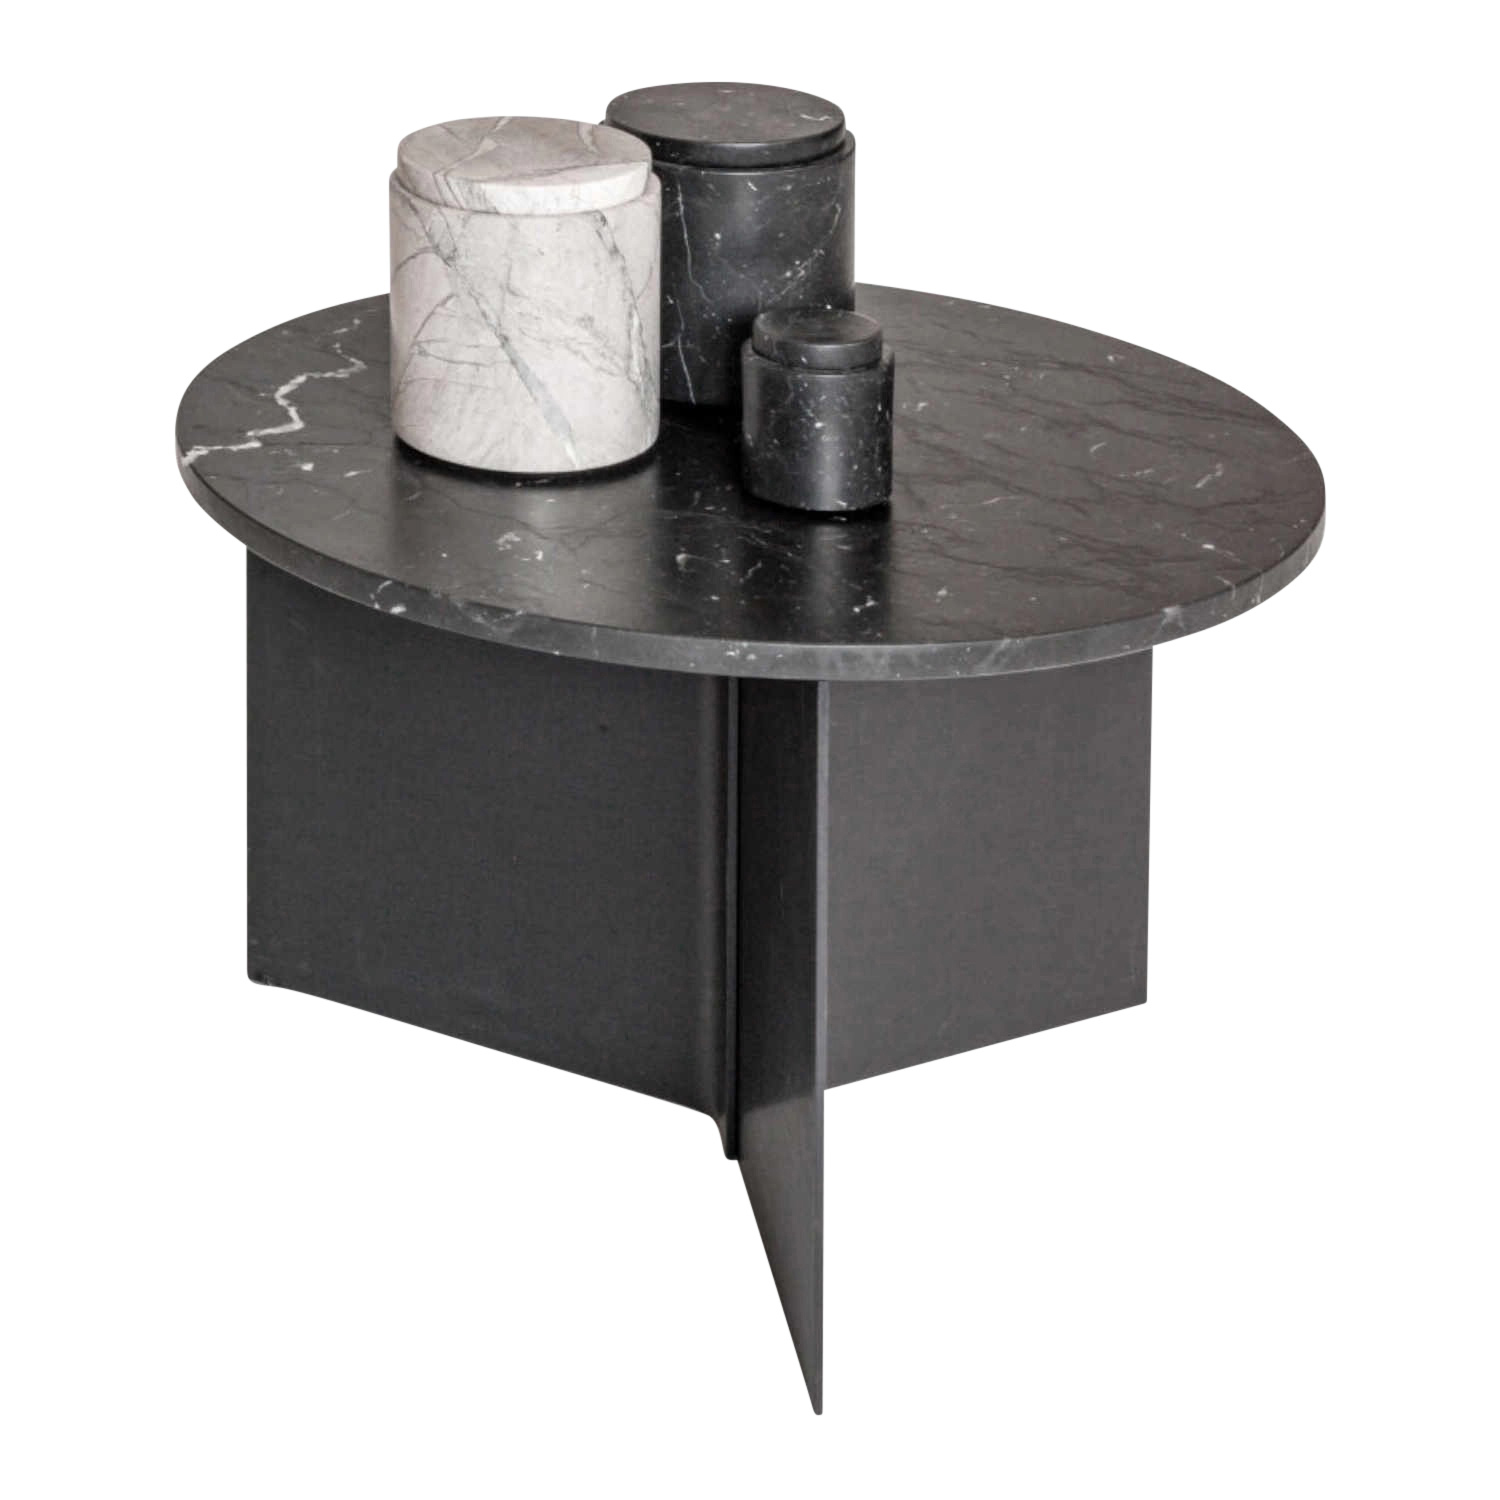 ALTO Couchtisch, Tischplatte schwarznuss ohne splintanteil lackiert, Grösse d. 60, h. 41 cm, Untergestell schwarz von Studio by Mobimex